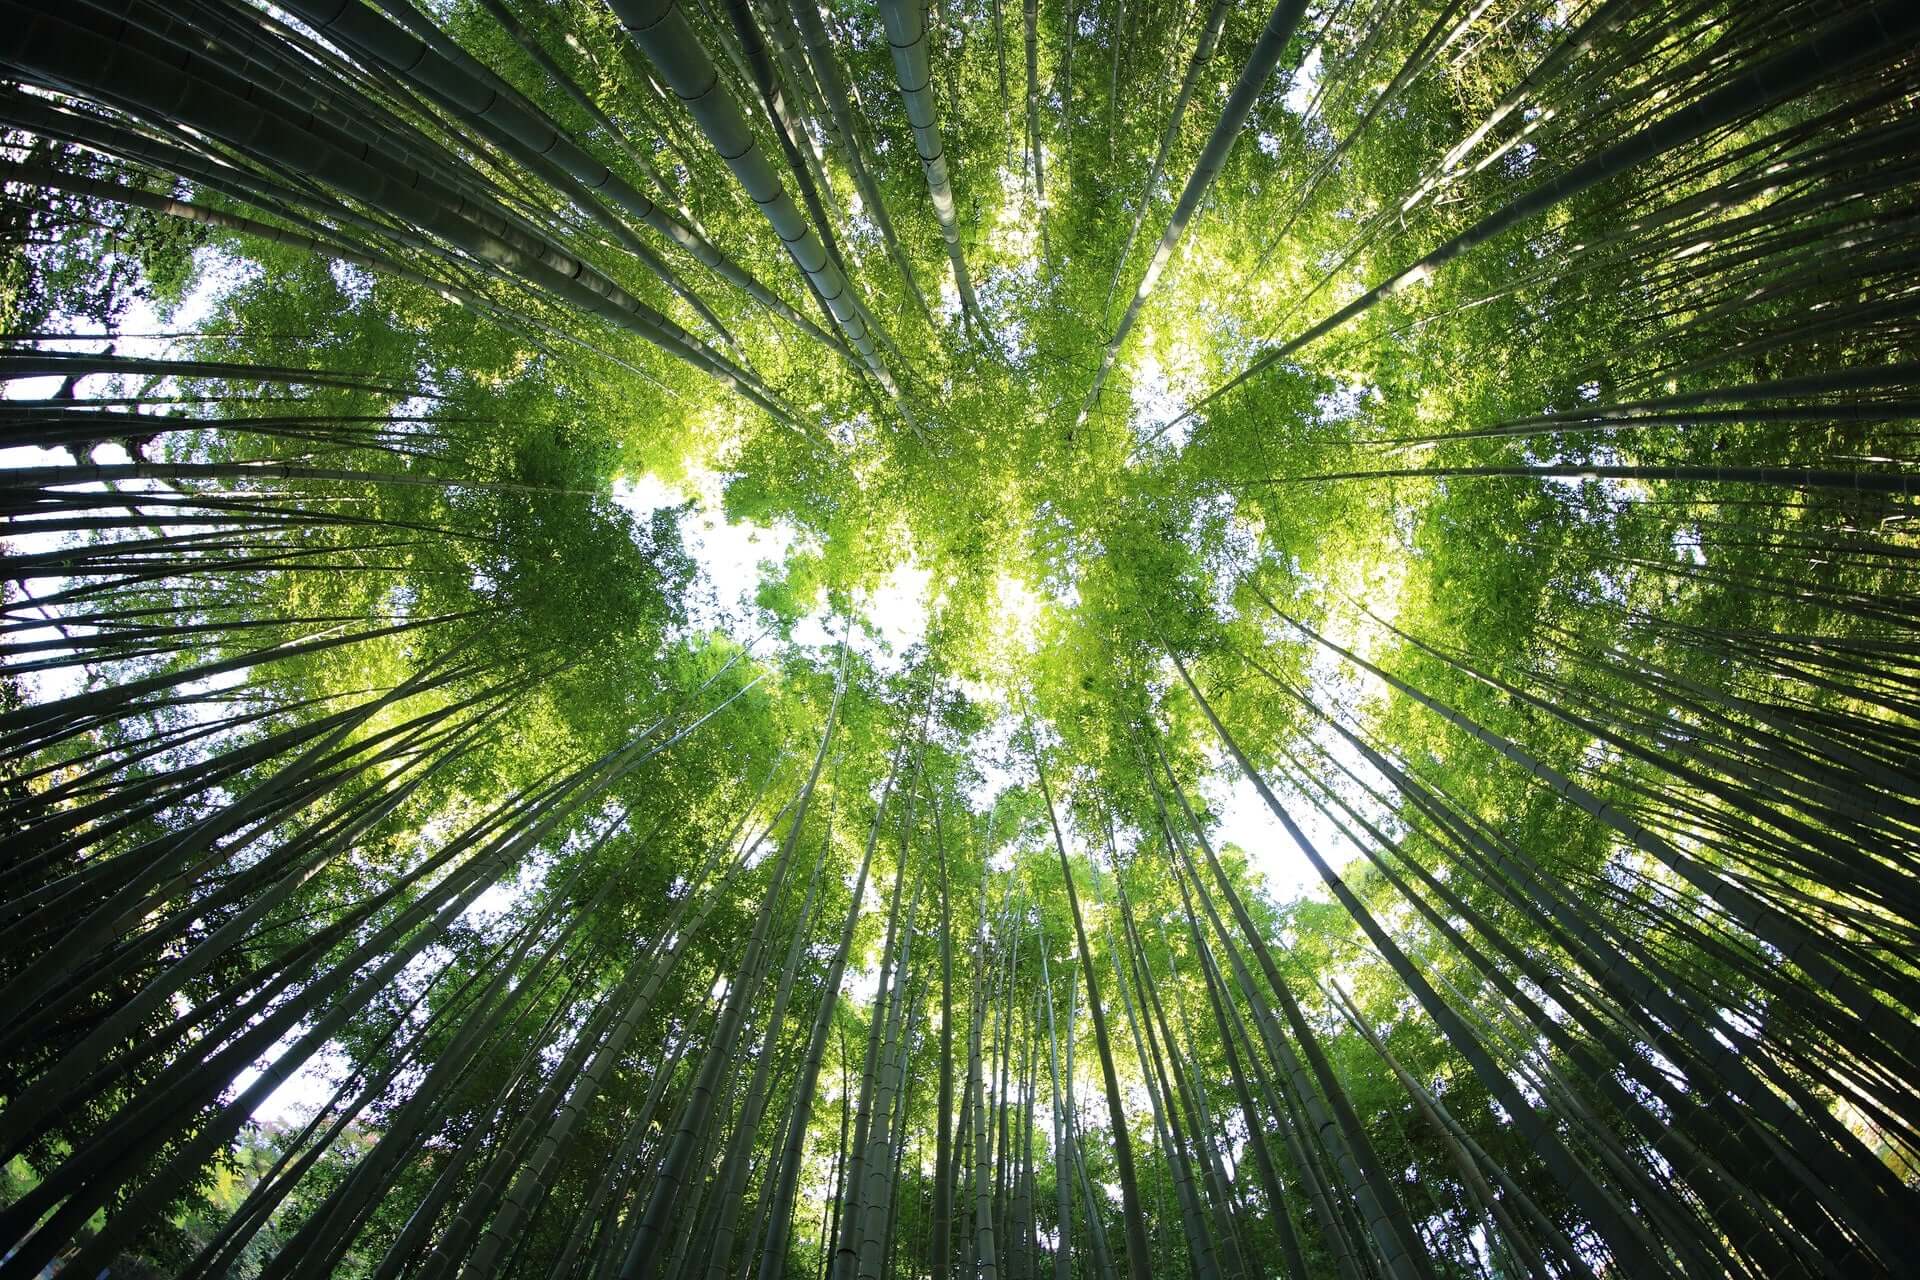 A shot looking up at tall bamboo stalks.